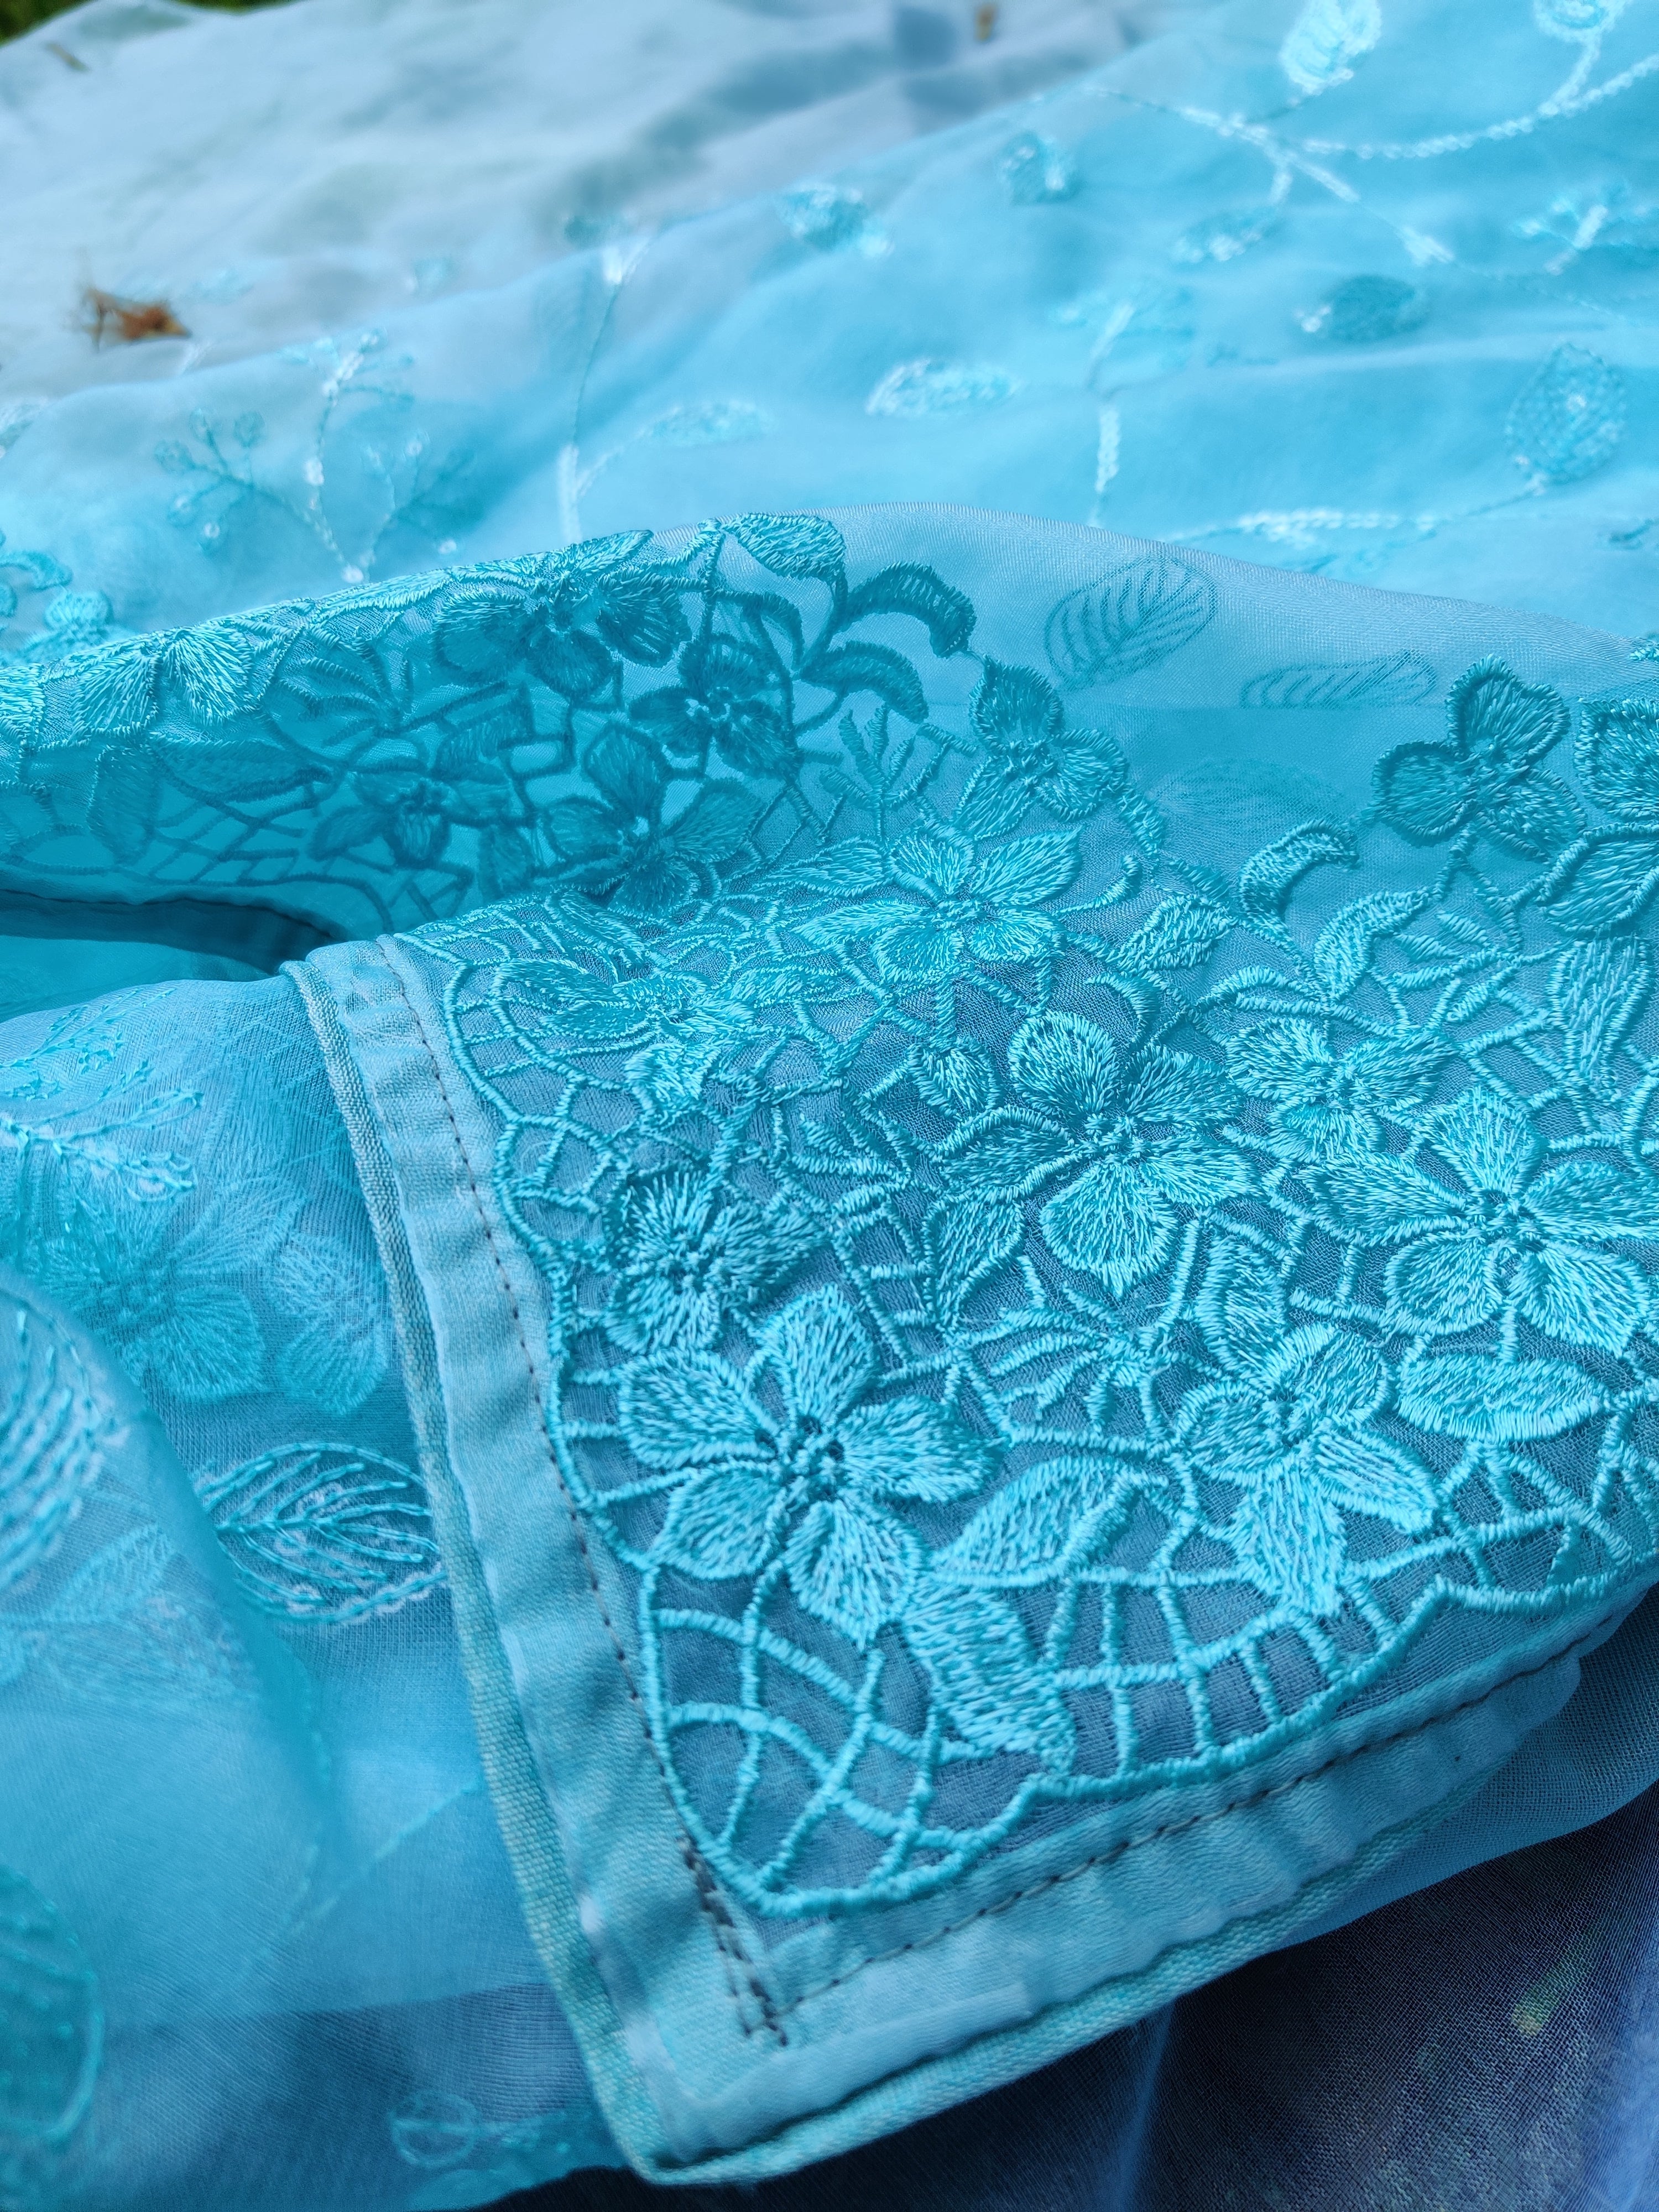 Blue Organza sari with Floral Design